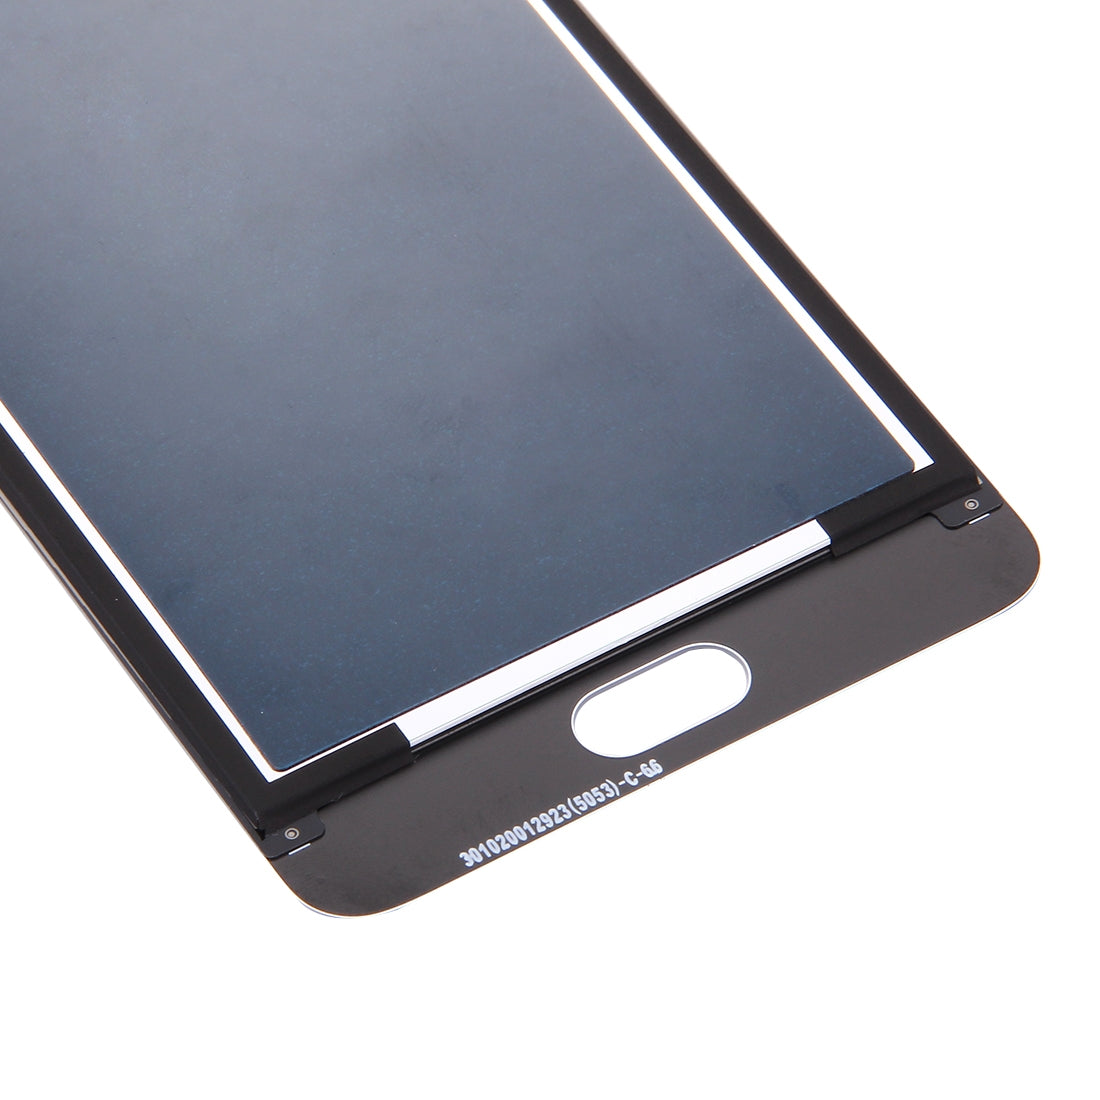 Ecran LCD + Numériseur Tactile Meizu M5 Note Meilan Note 5 Blanc